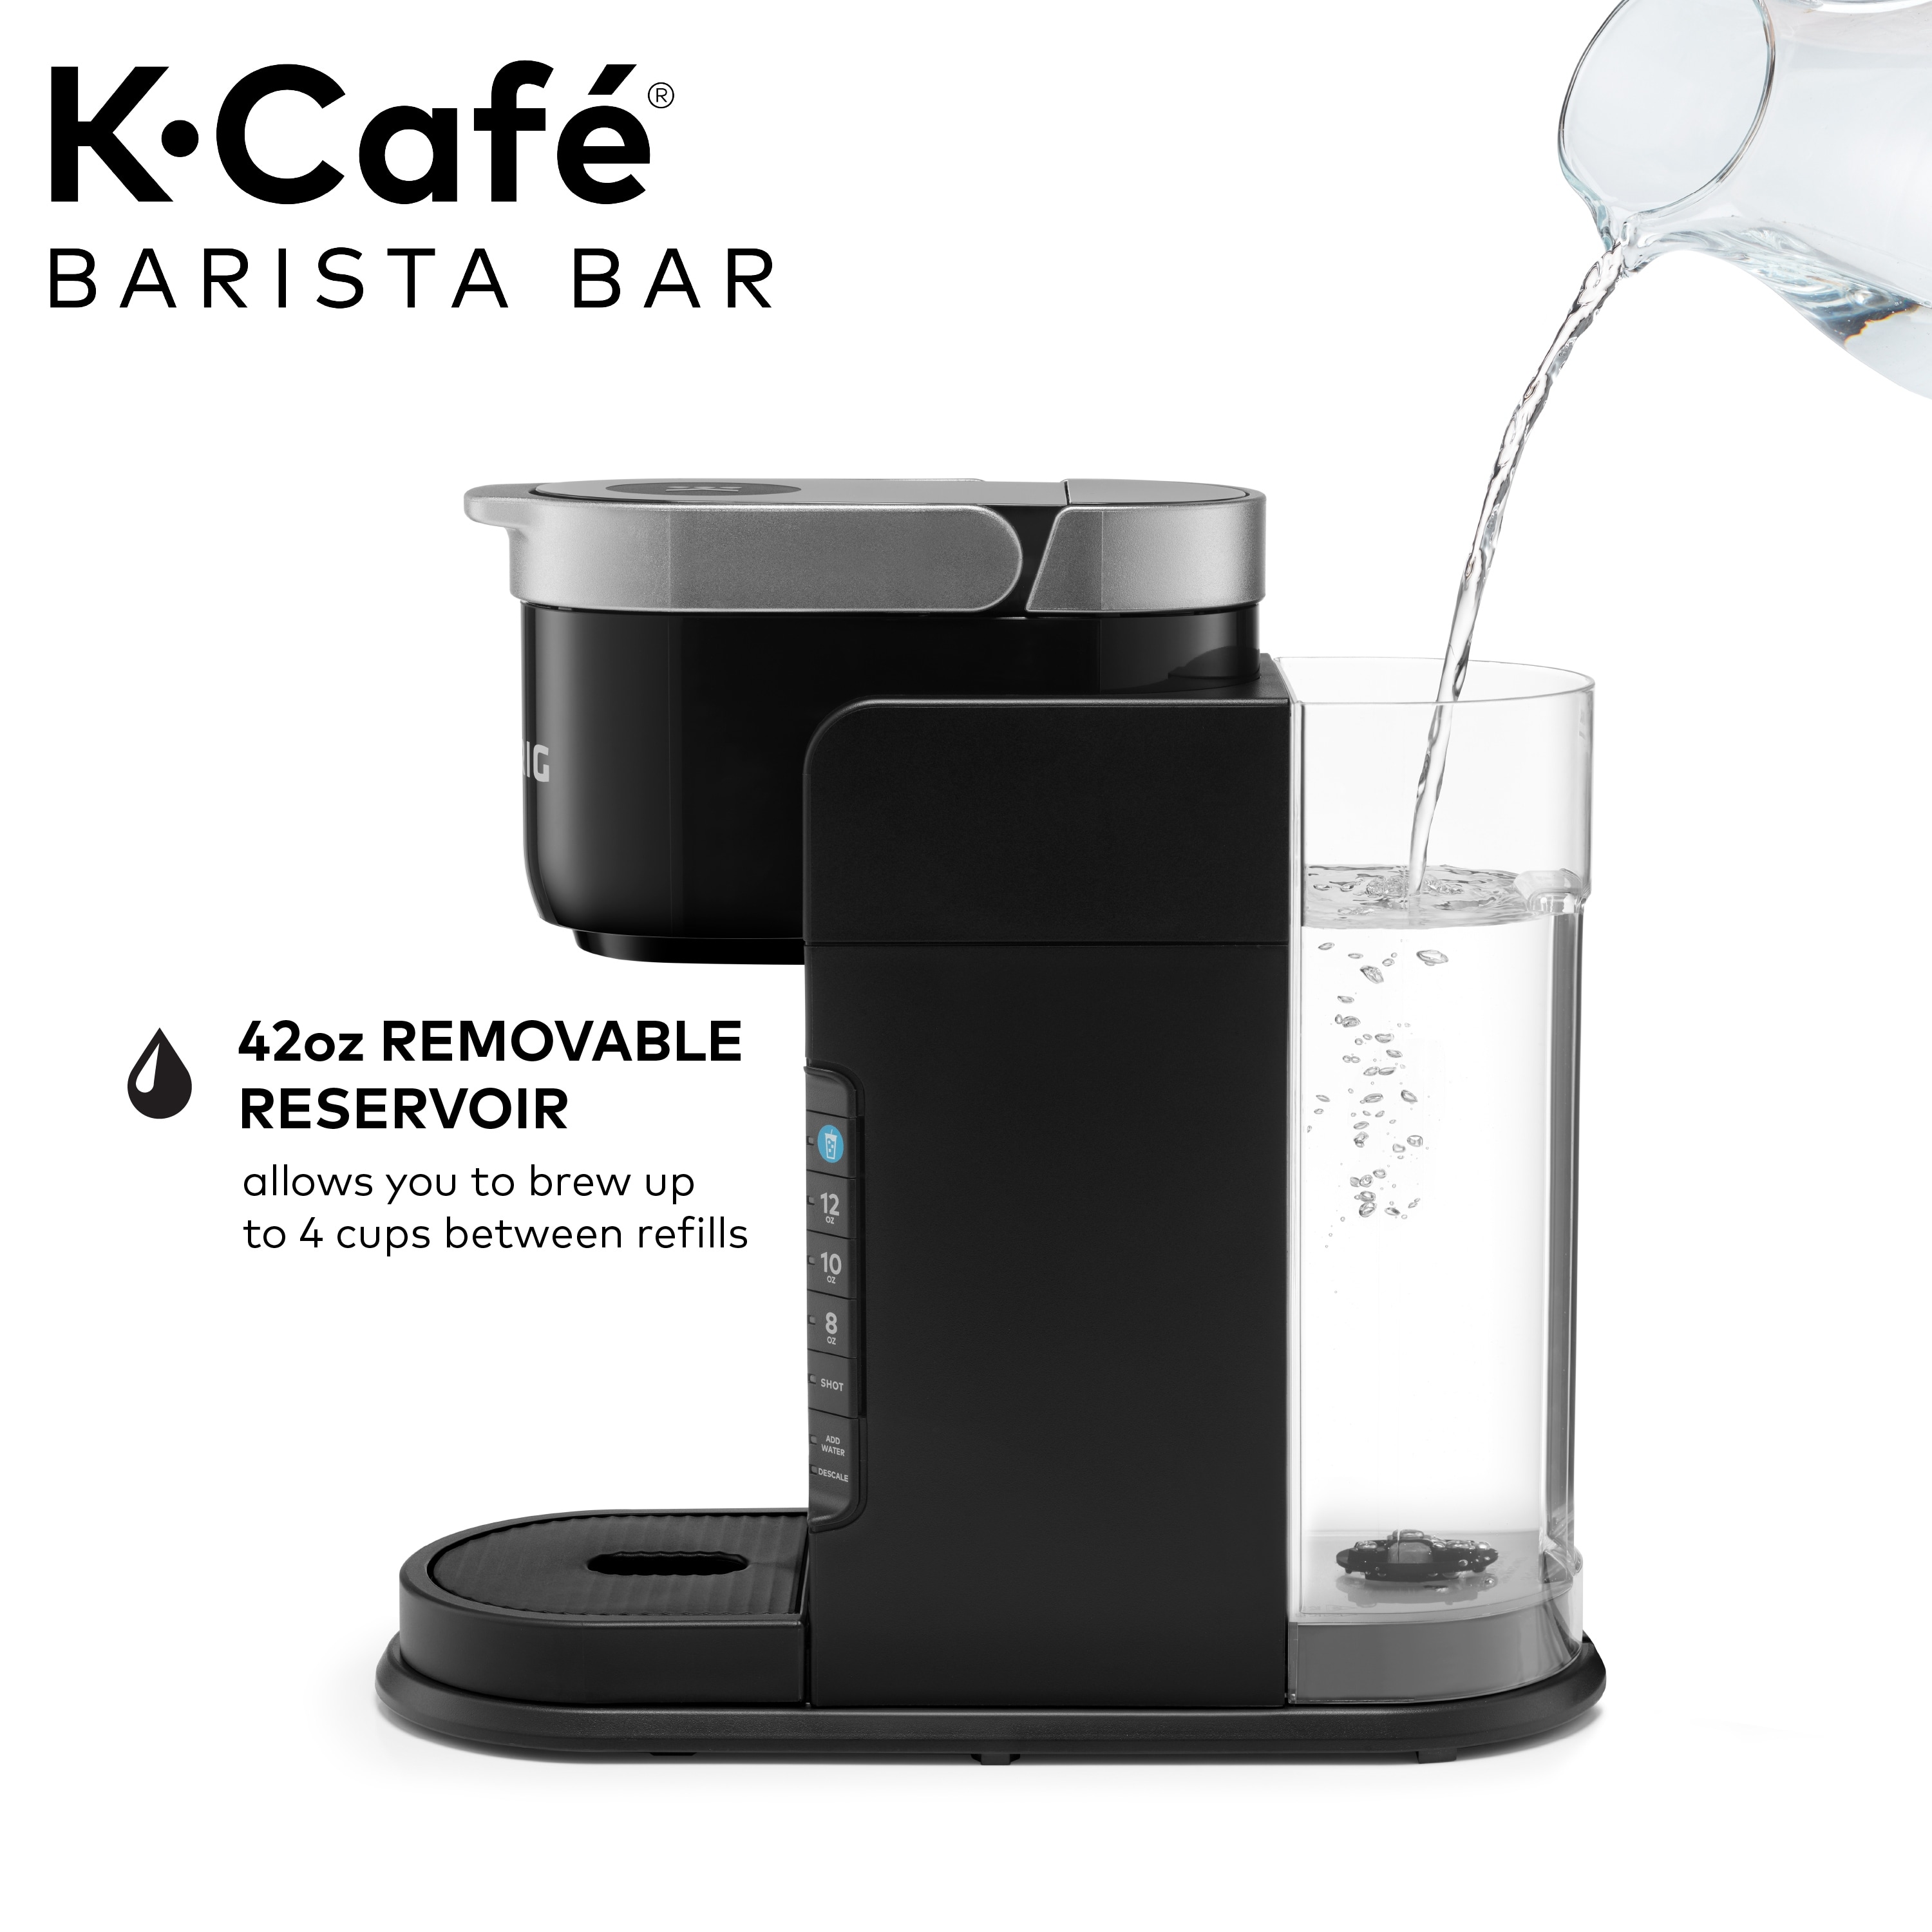 Keurig® K-Café Barista Bar Brewer and Frother